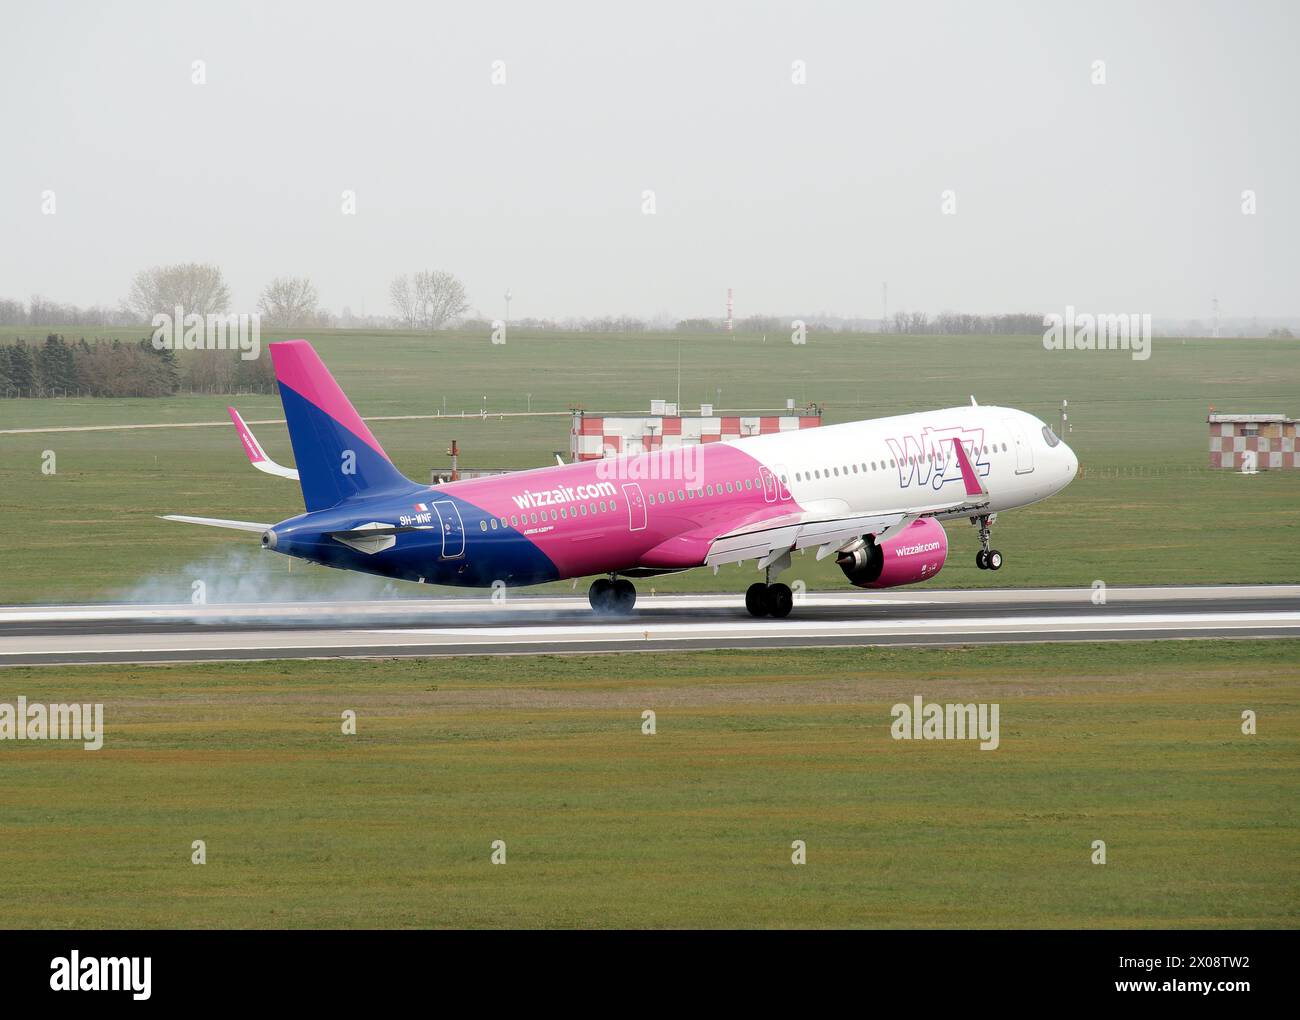 Wizz Air (es una aerolínea húngara de ultra bajo coste con sede en Budapest), Airbus A321 Neo Airplane, Cargo hill, Budapest, Hungría, Europa Foto de stock